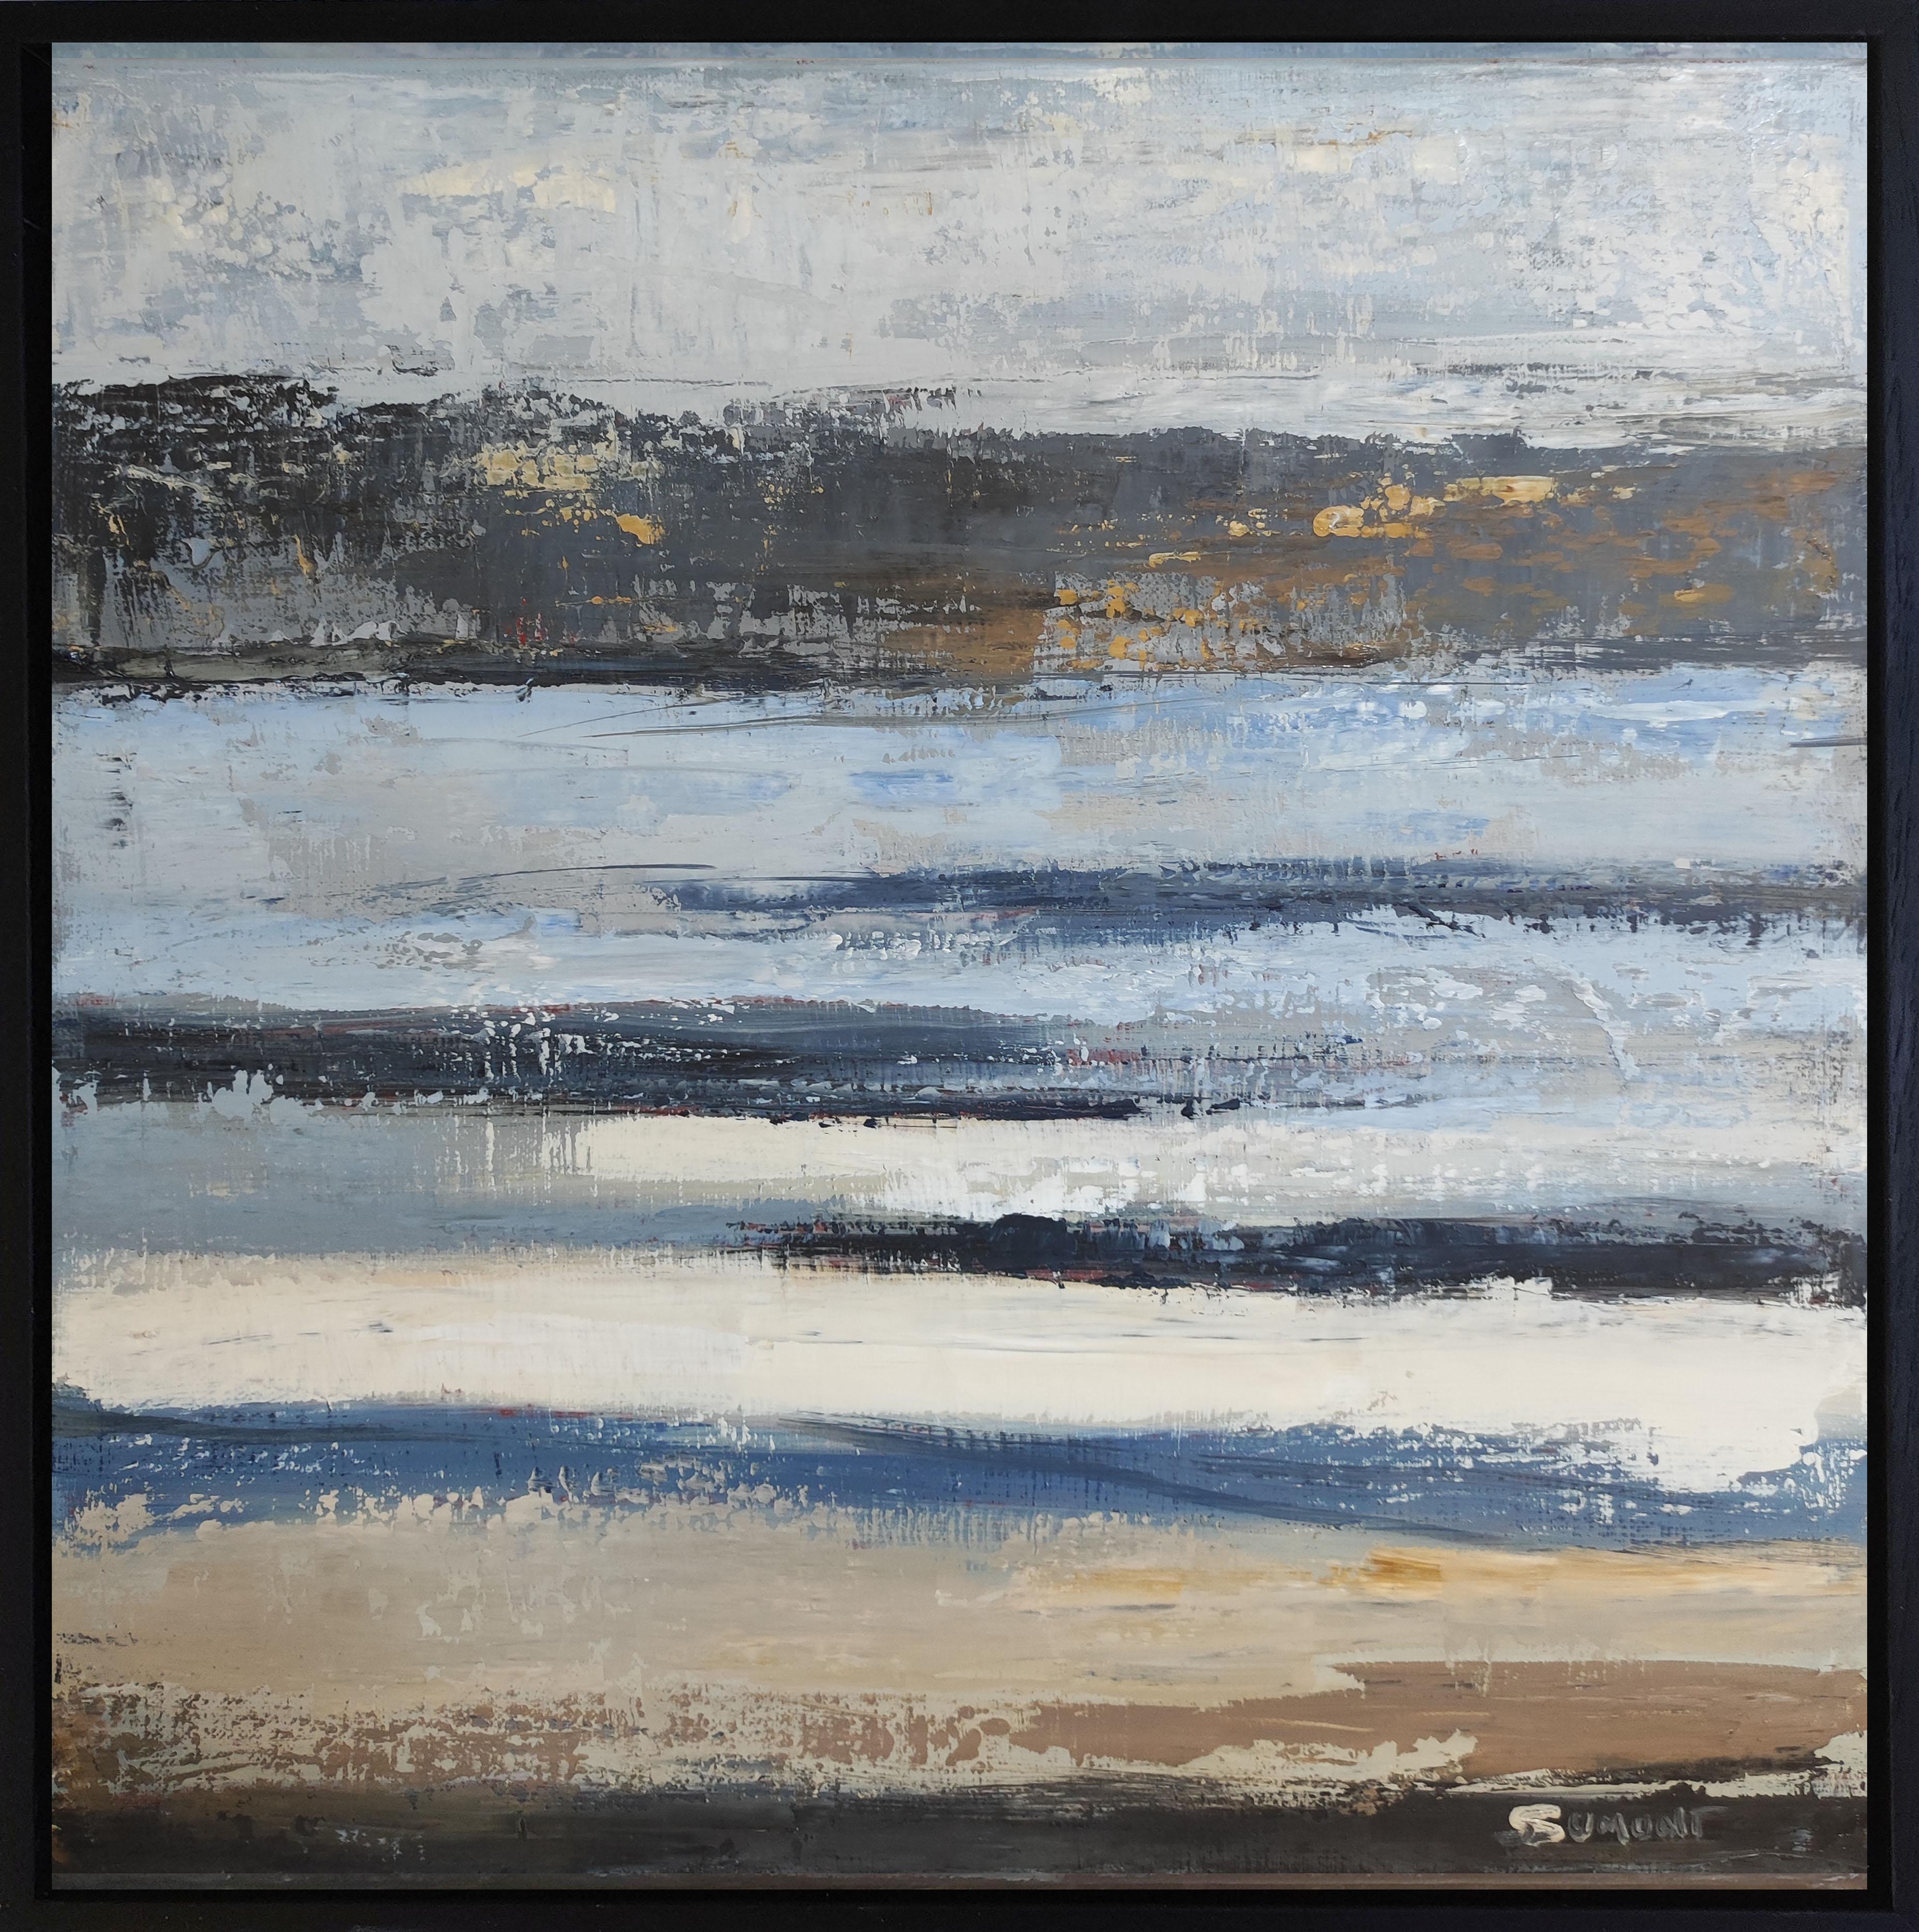 Abstract Painting SOPHIE DUMONT - Tableau abstrait, paysage, bleu, huile sur toile, expressionnisme, France 